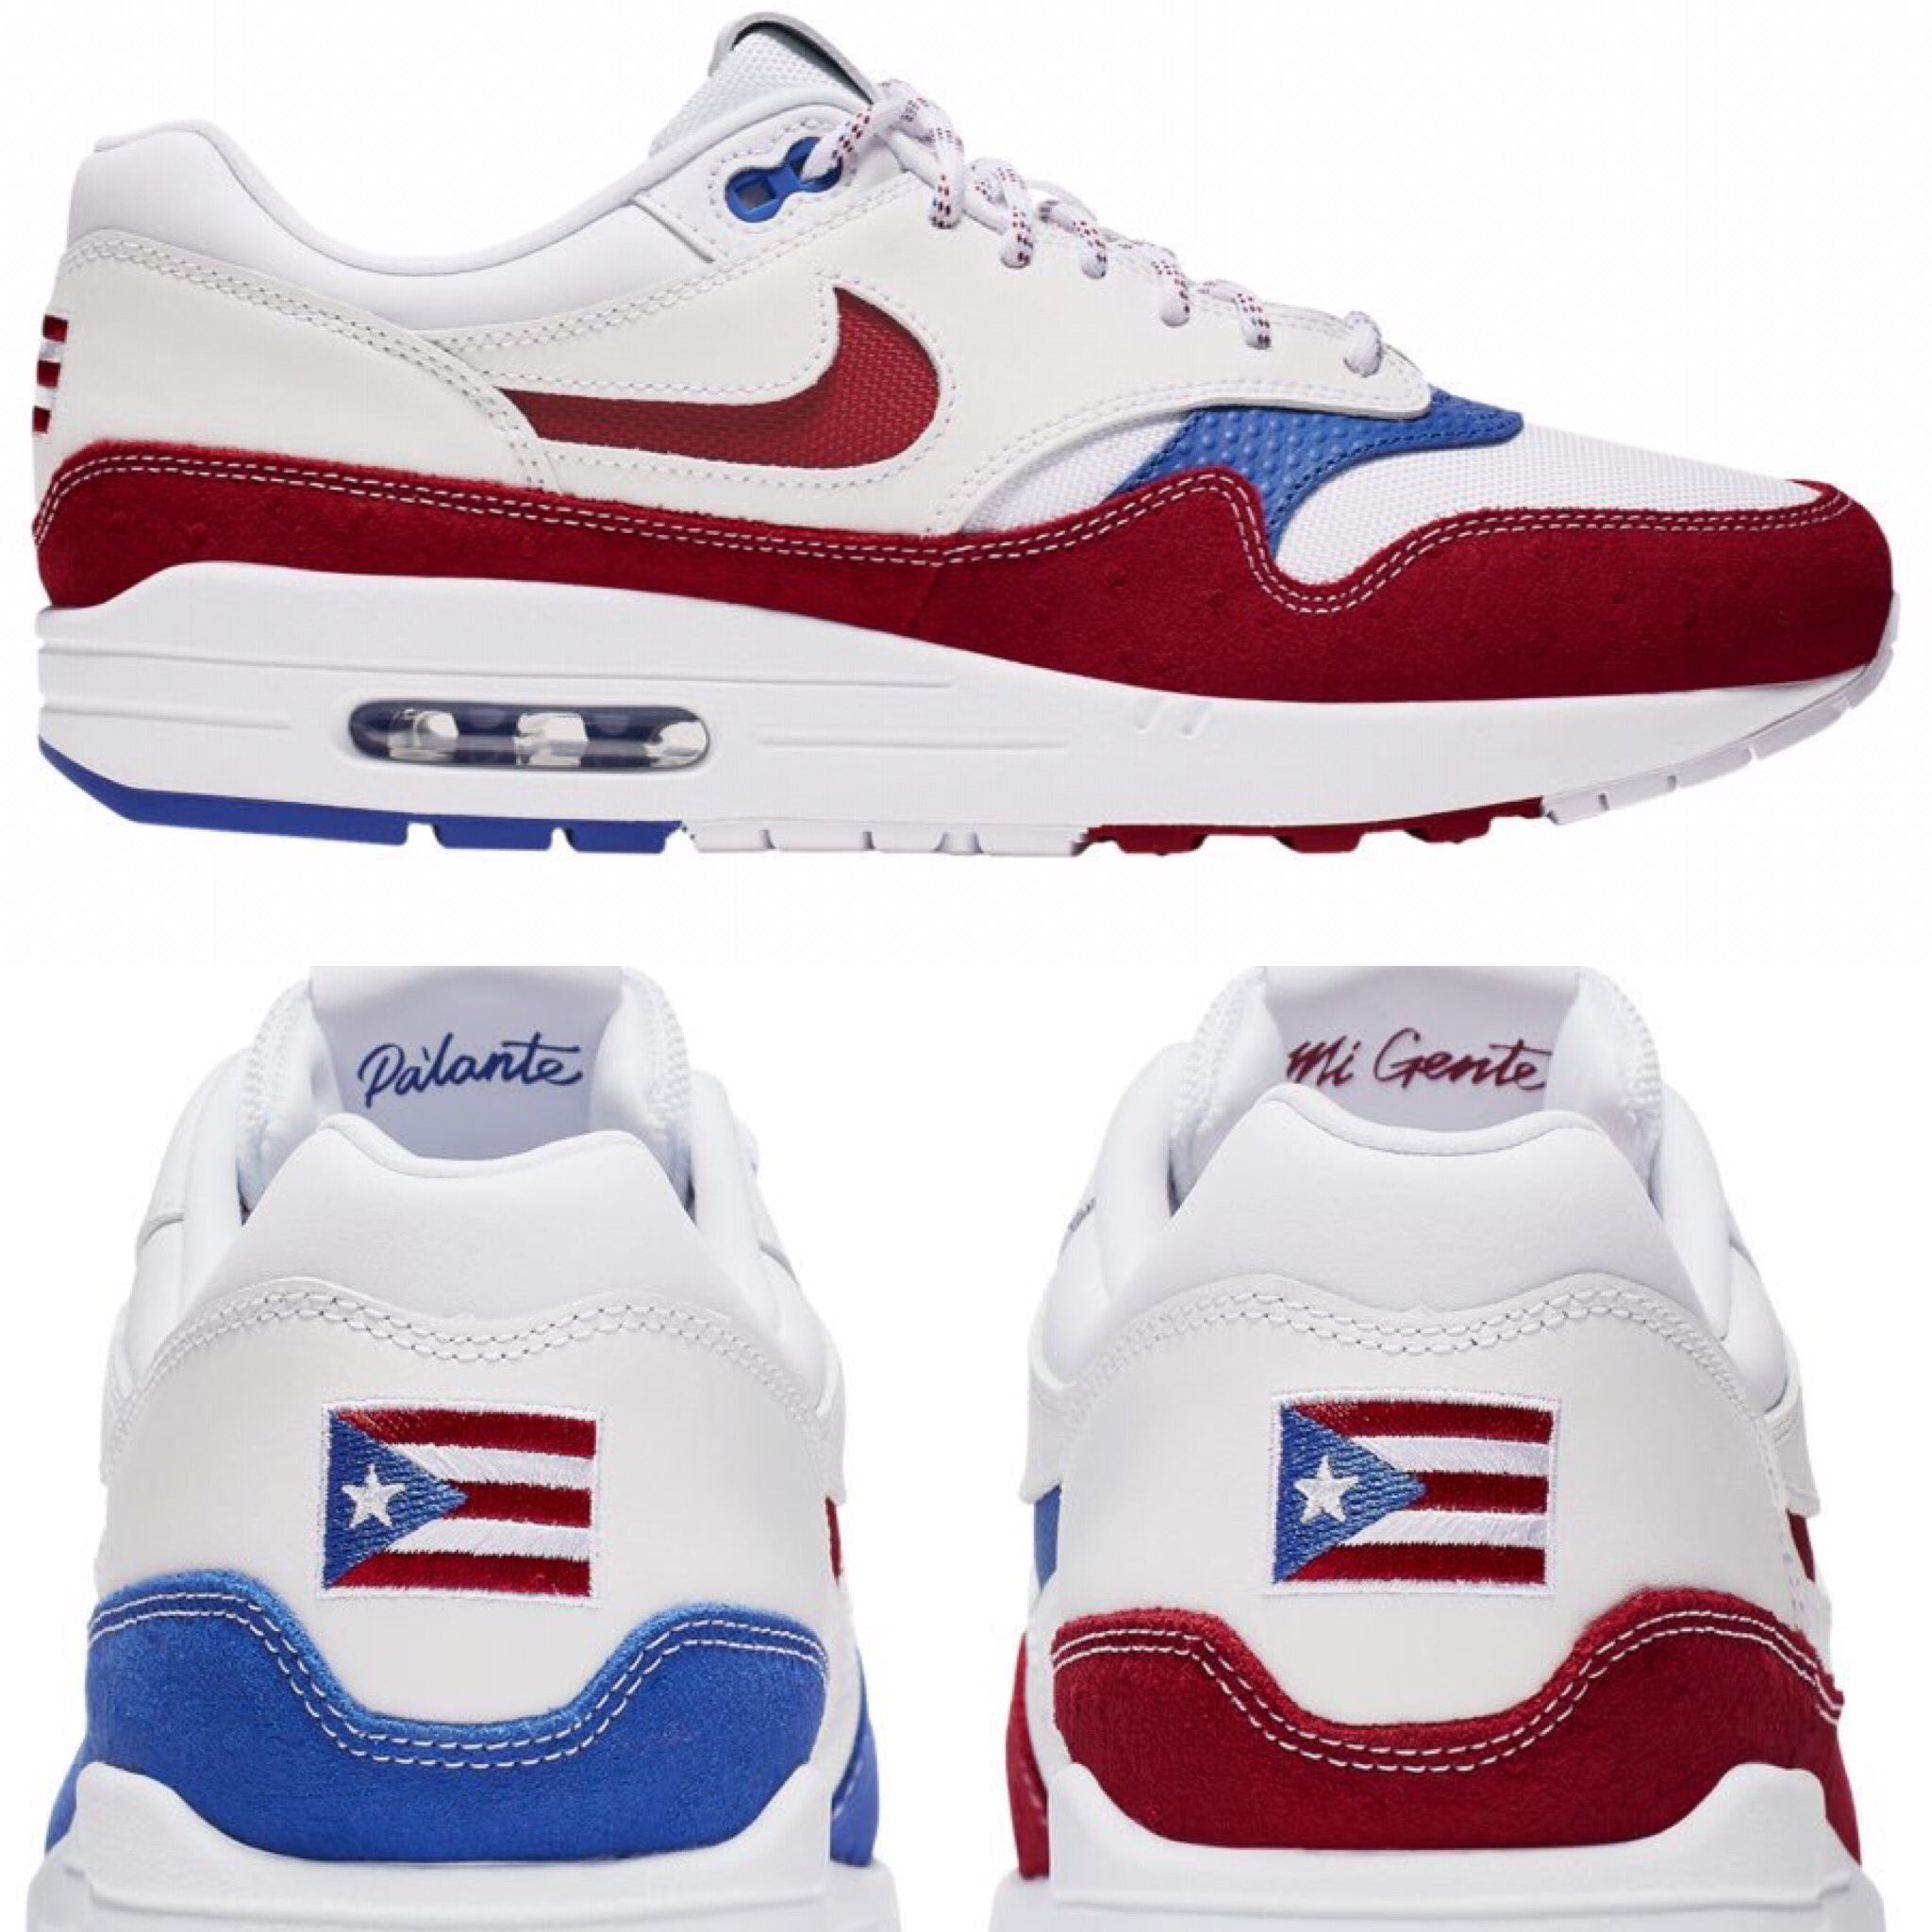 Controlar Escudriñar Preguntarse Maratonespr.com on Twitter: "Compañía Nike lanza unos tenis con la bandera  de Puerto Rico. Los mismos también llevan un mensaje impreso que lee “Pa'lante  mi gente”. El modelo de tenis son los